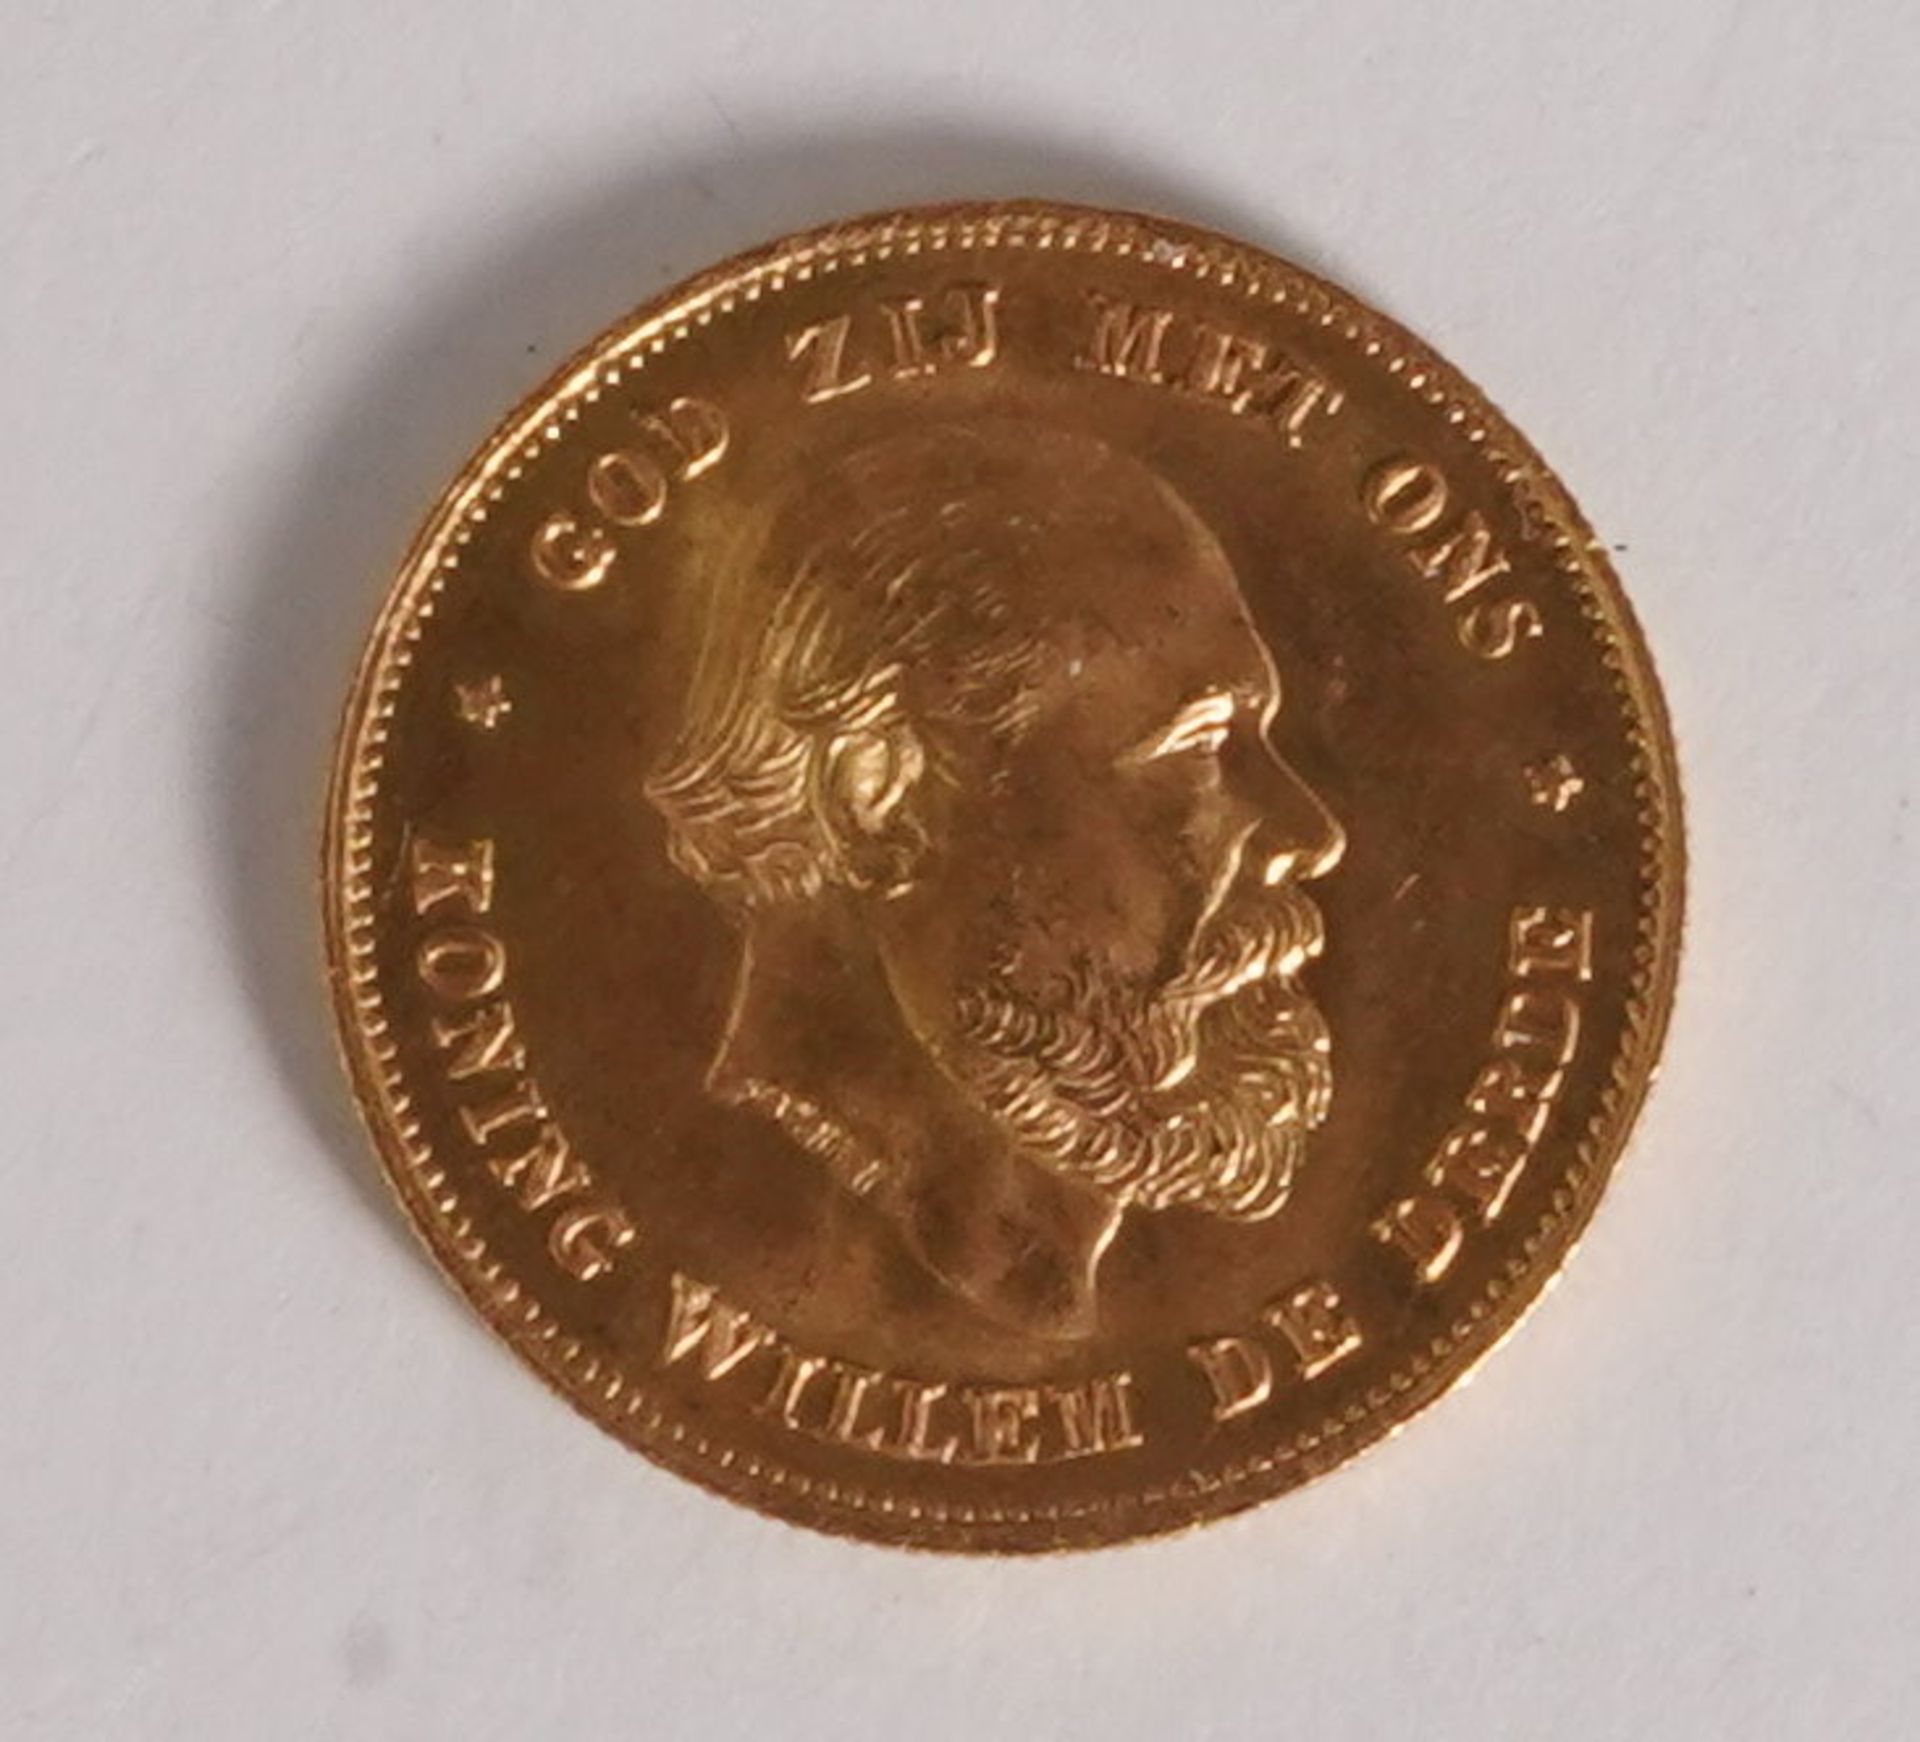 Goldmünze 10 Gulden